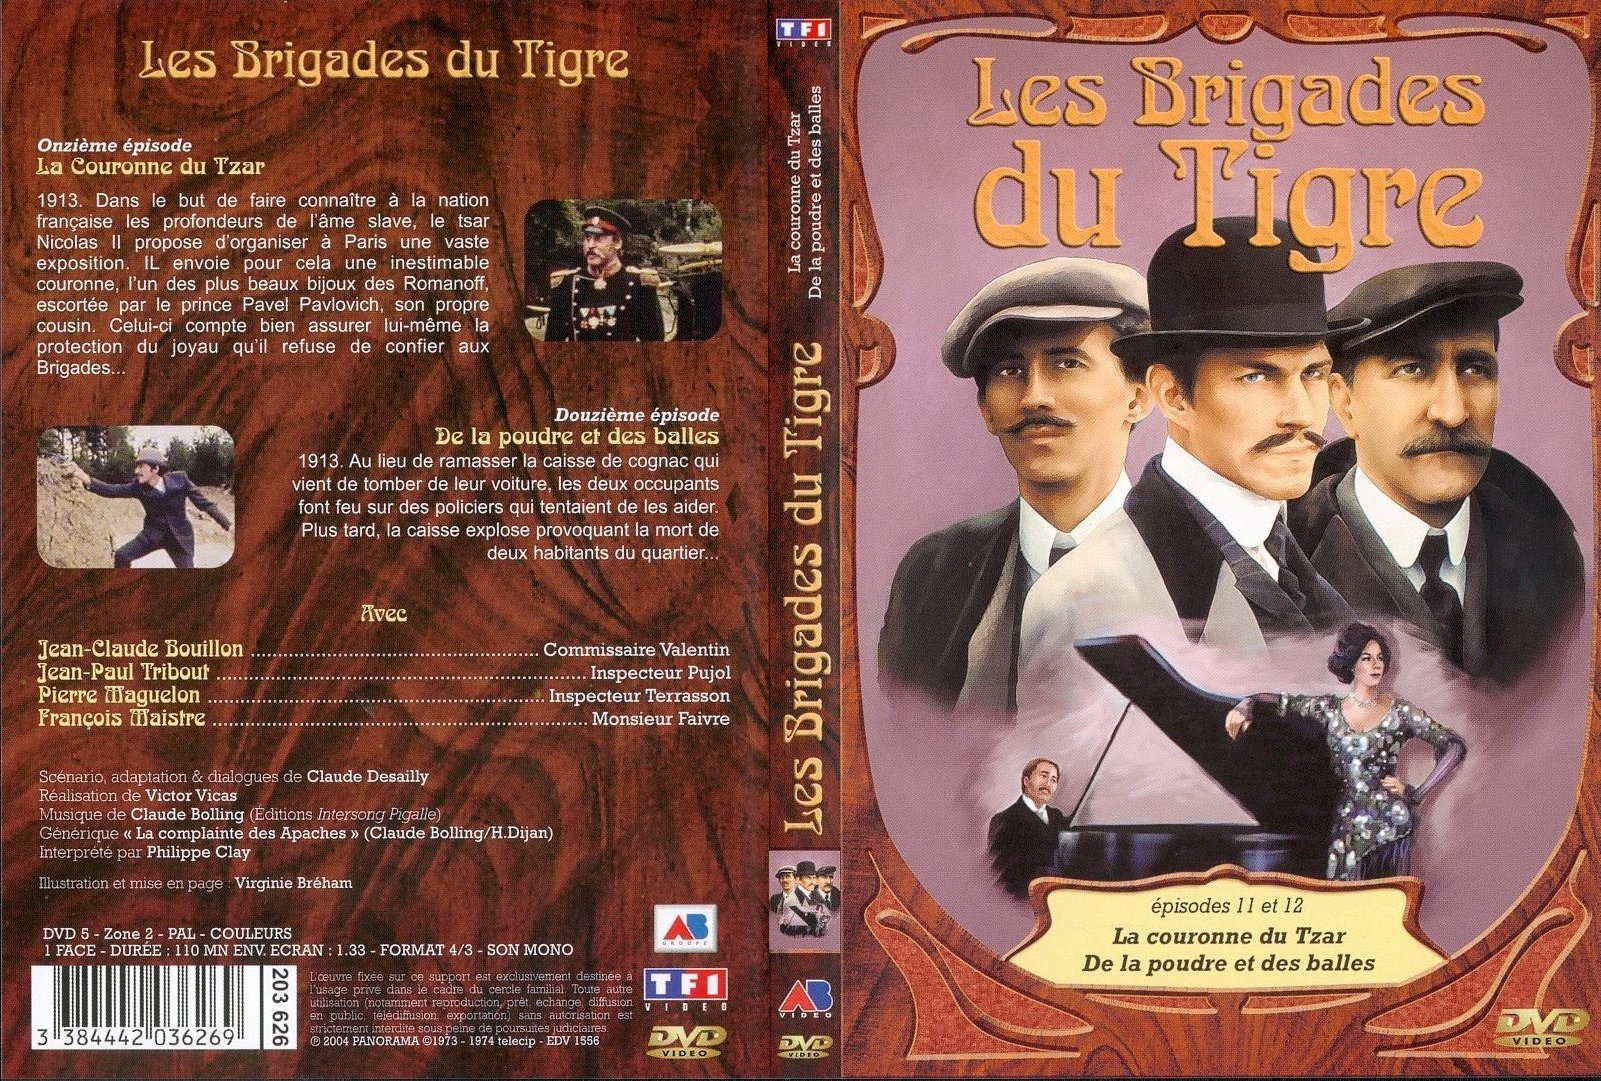 Jaquette DVD Les brigades du tigre vol 6